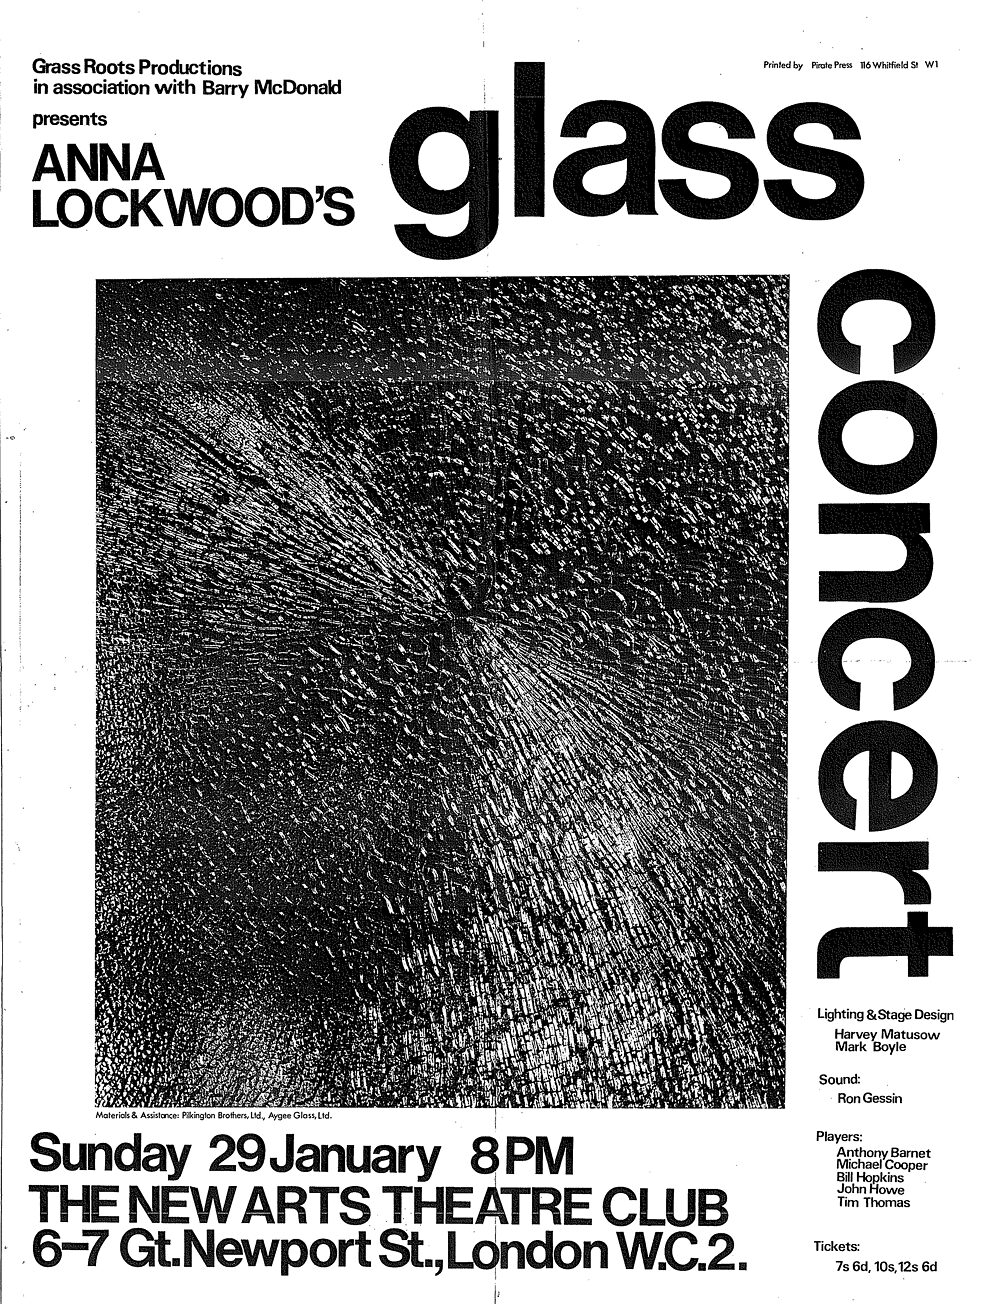 Ein Poster der ersten Glass Concerts